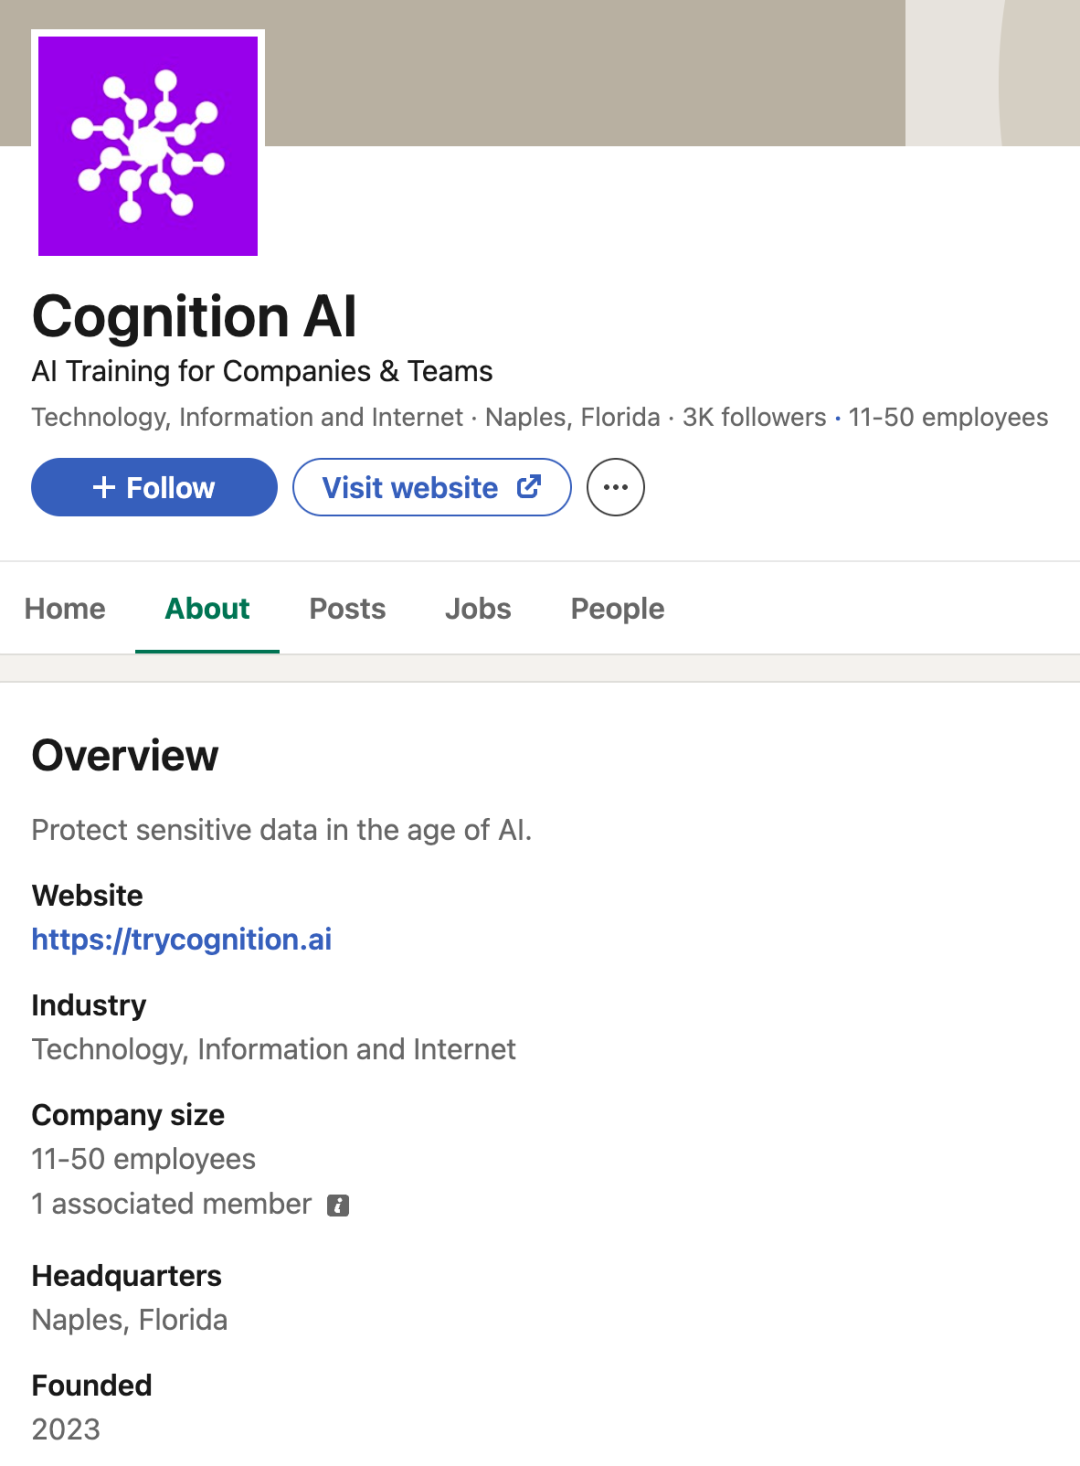 揭秘Cognition AI：20亿美元背后的惊人秘密